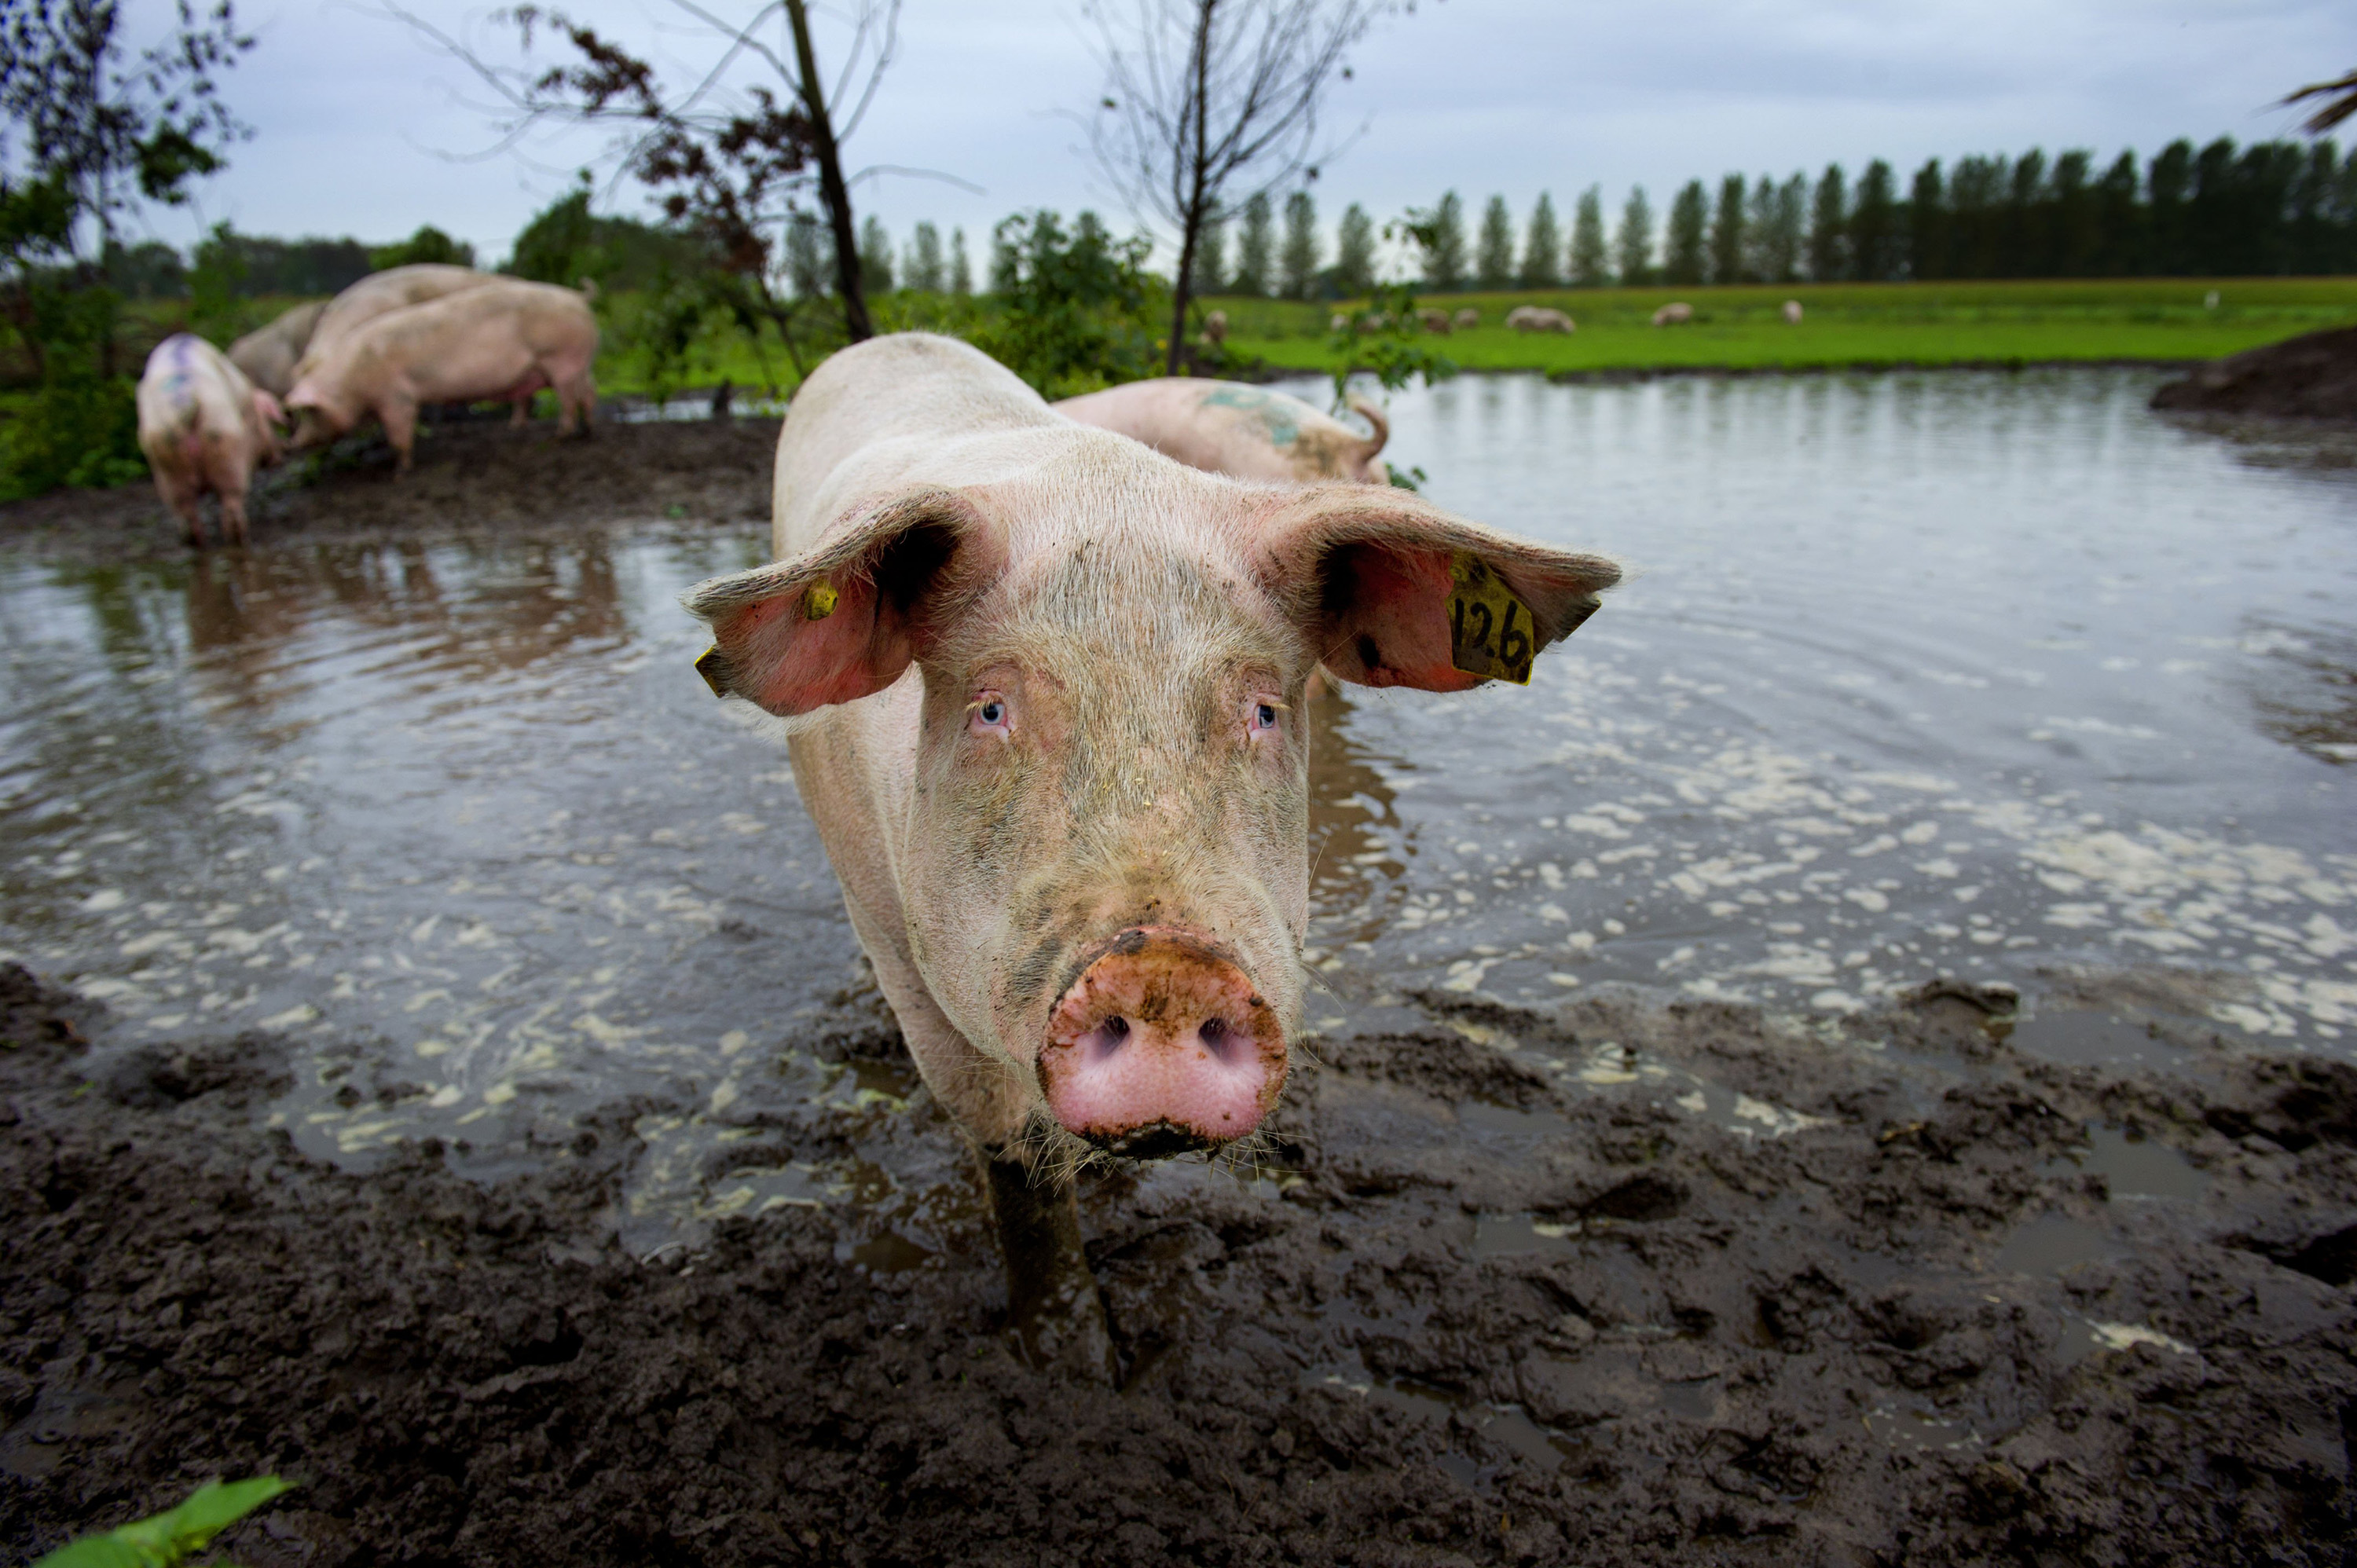 Pigs take a mud bath at a pig farm in Esch.